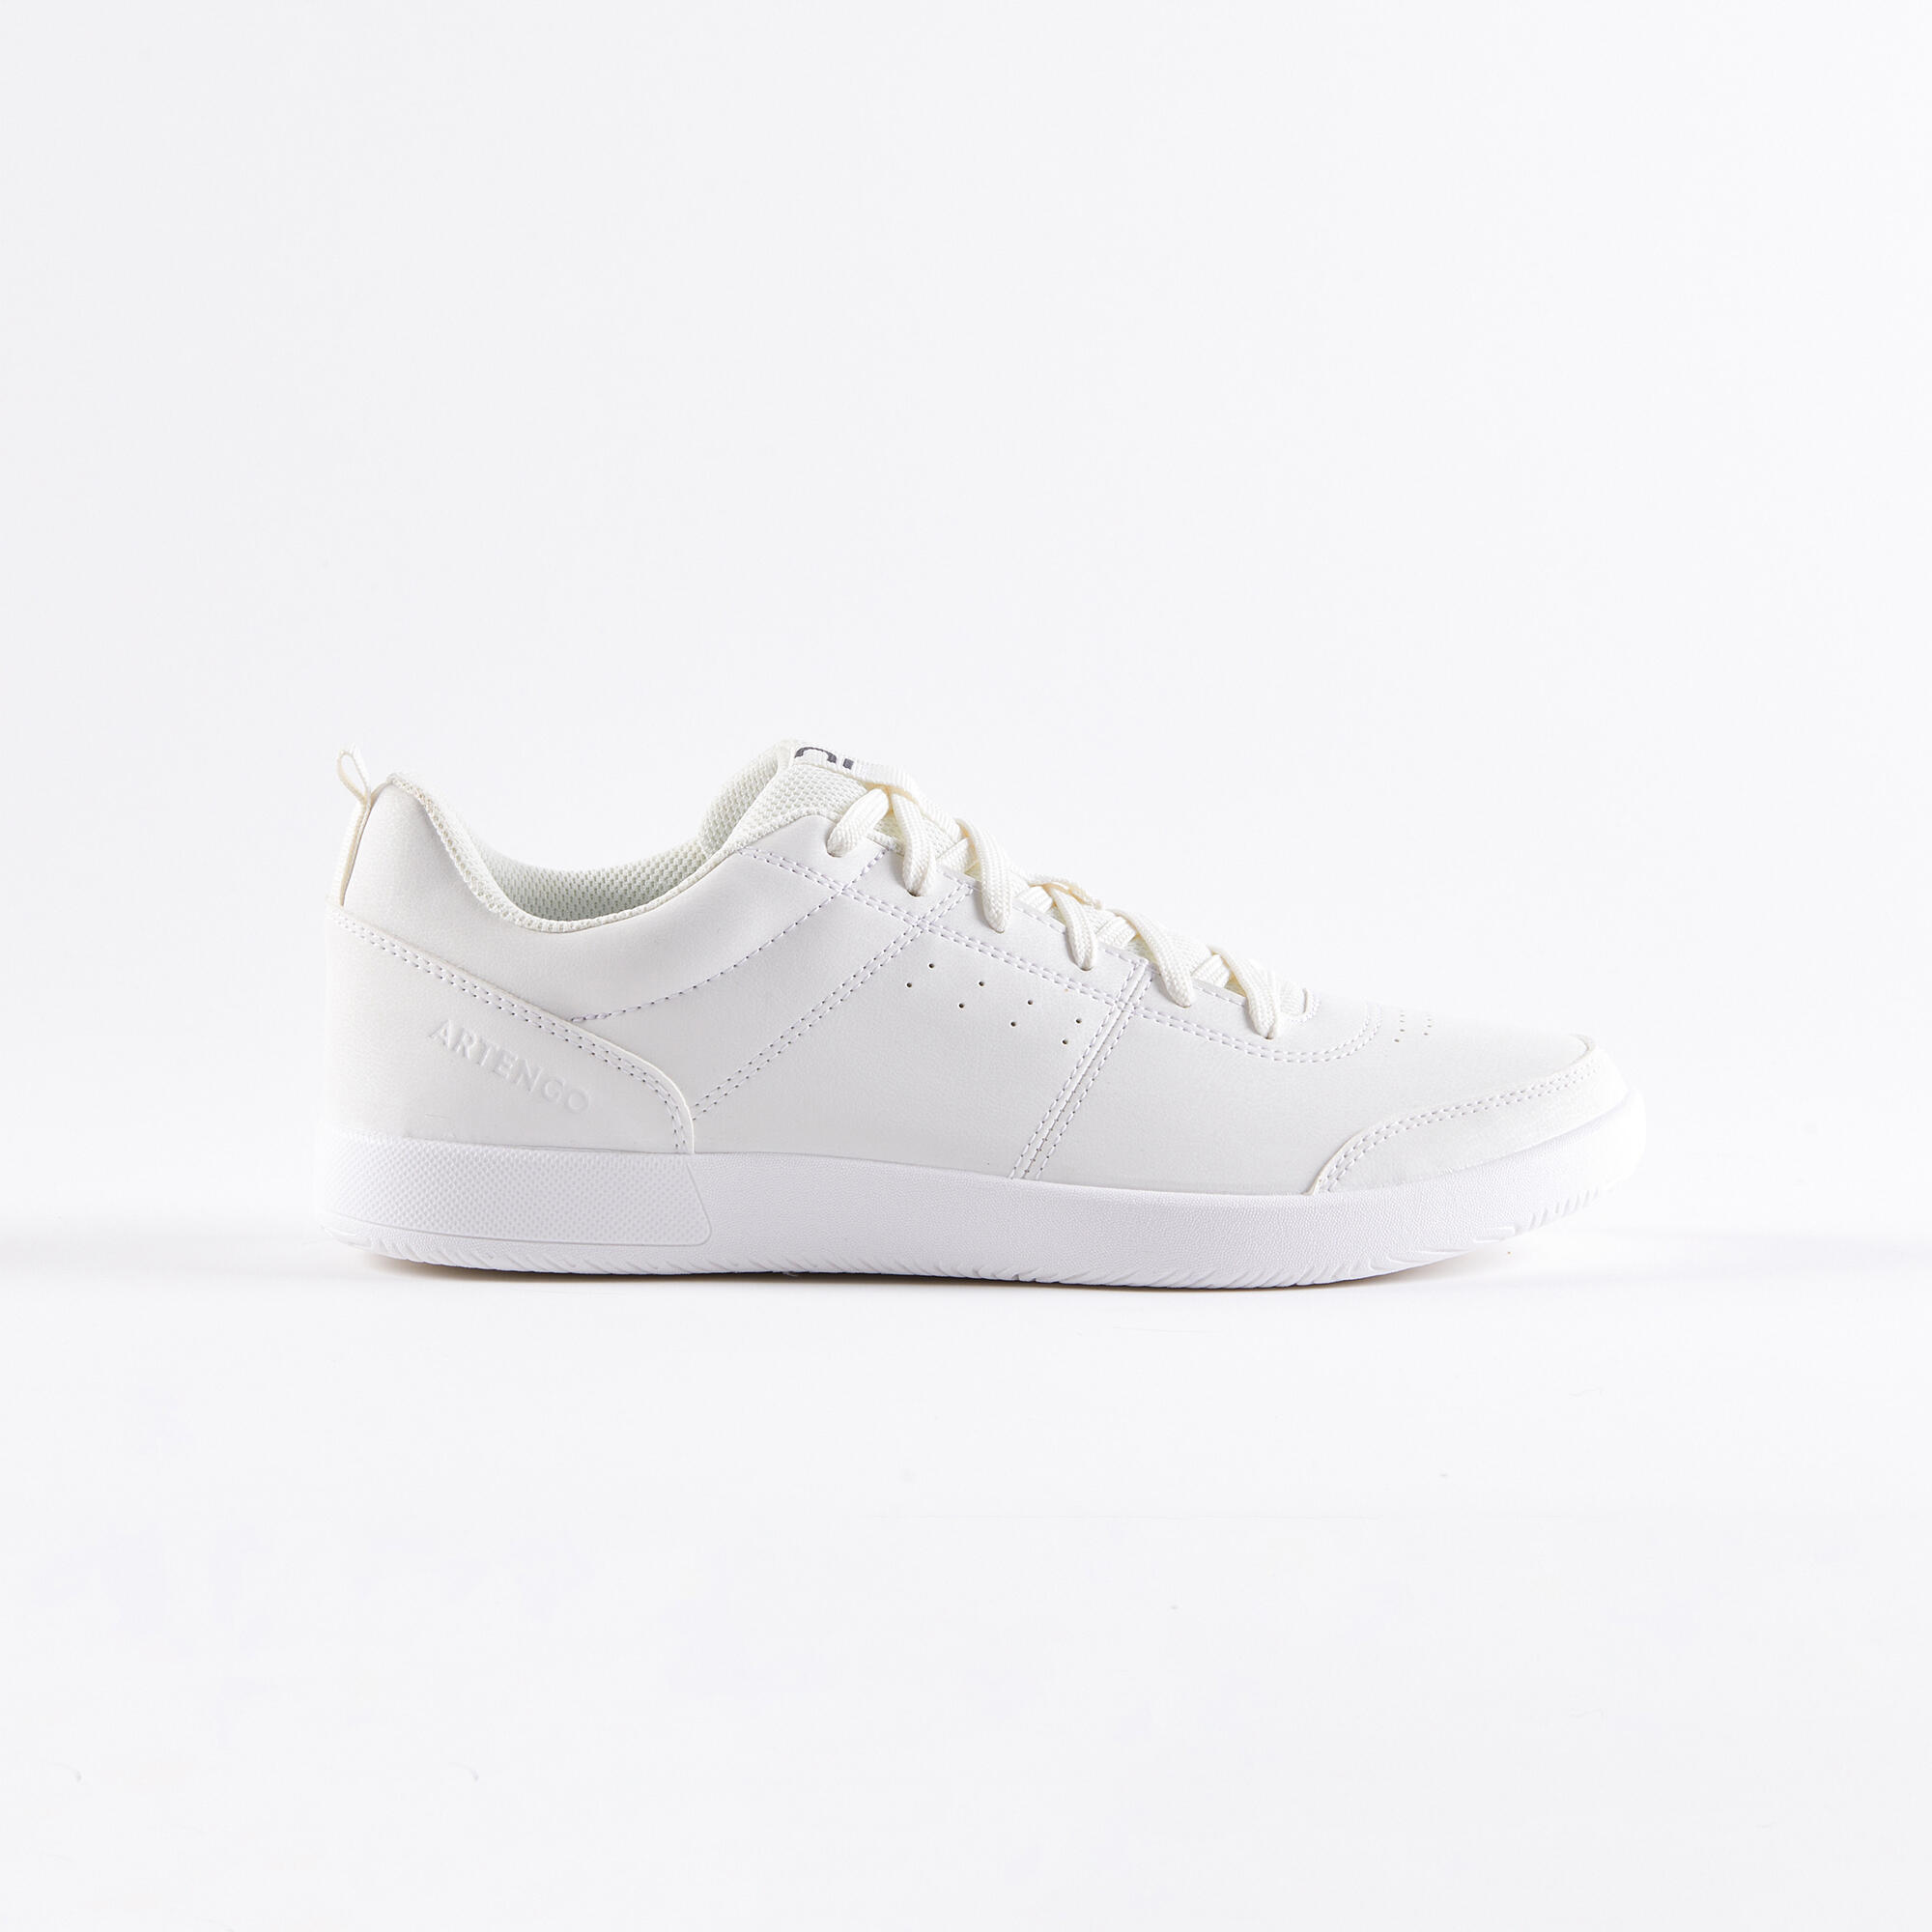 Men's Multi-court Tennis Shoes - Essential White - Magnolia - Artengo -  Decathlon